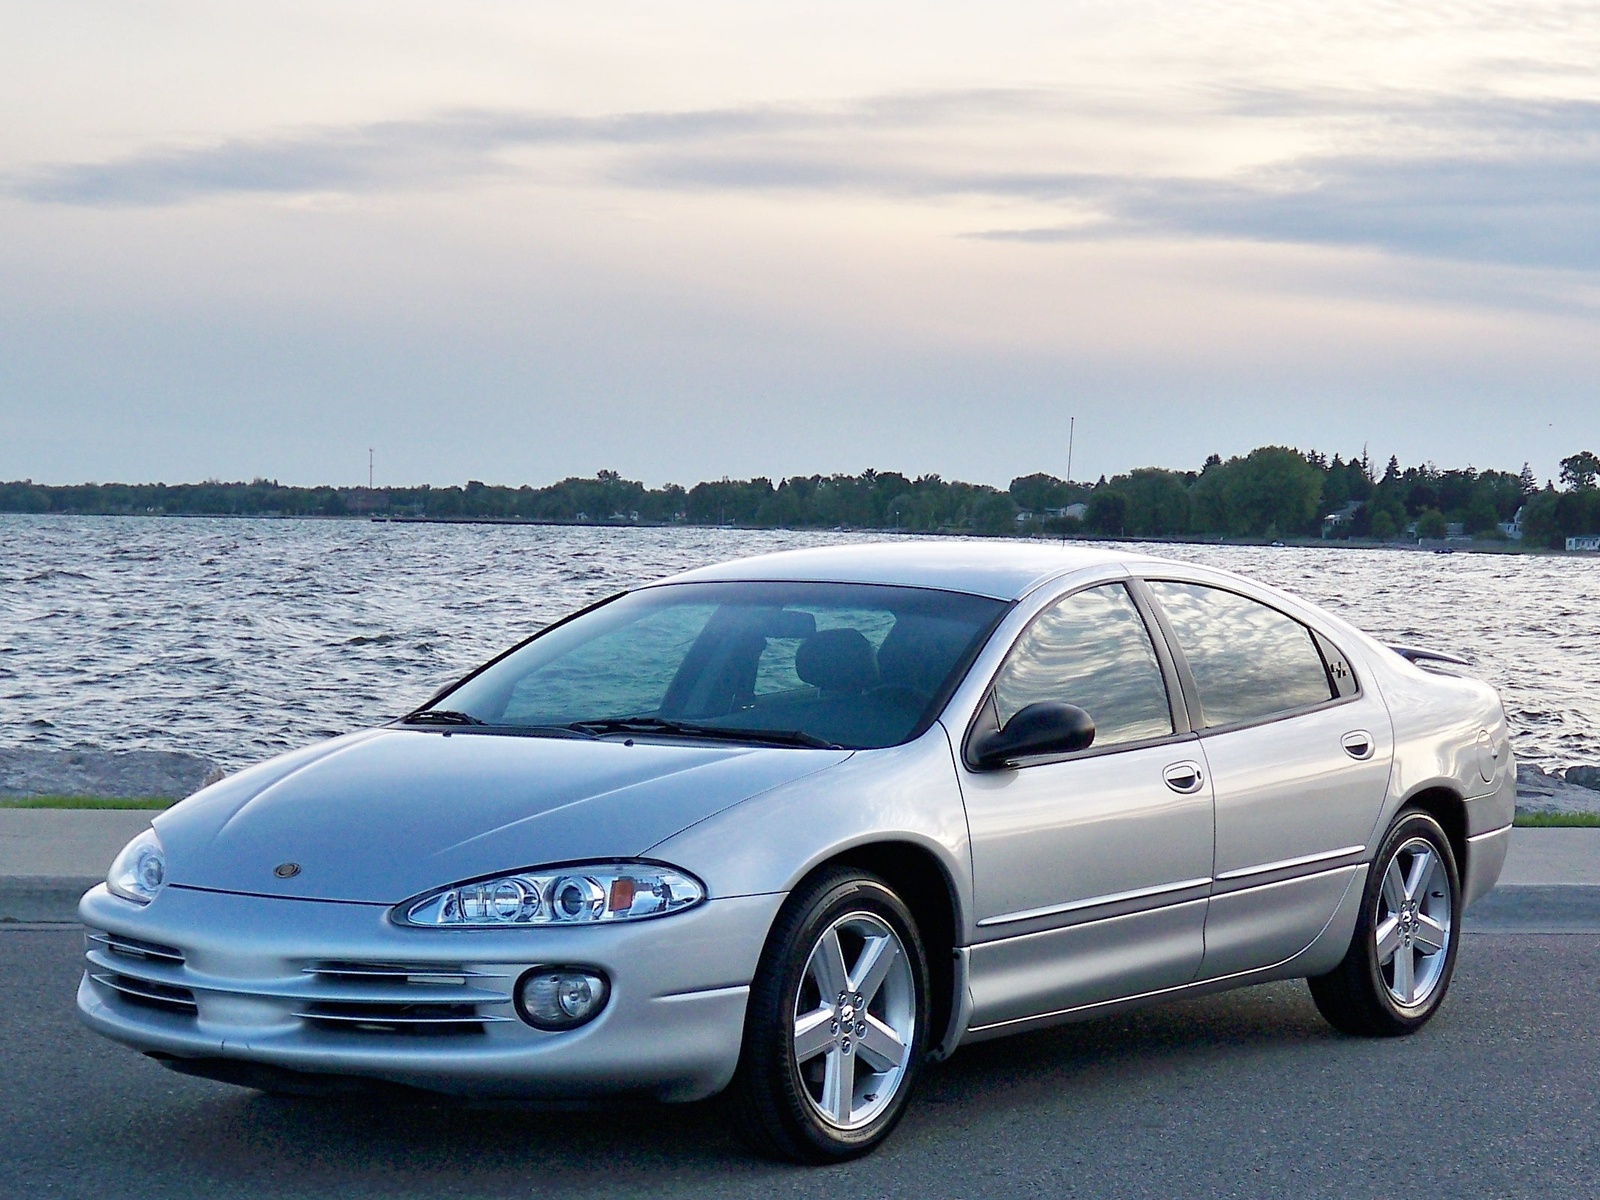 2000 Chrysler intrepid reviews #2